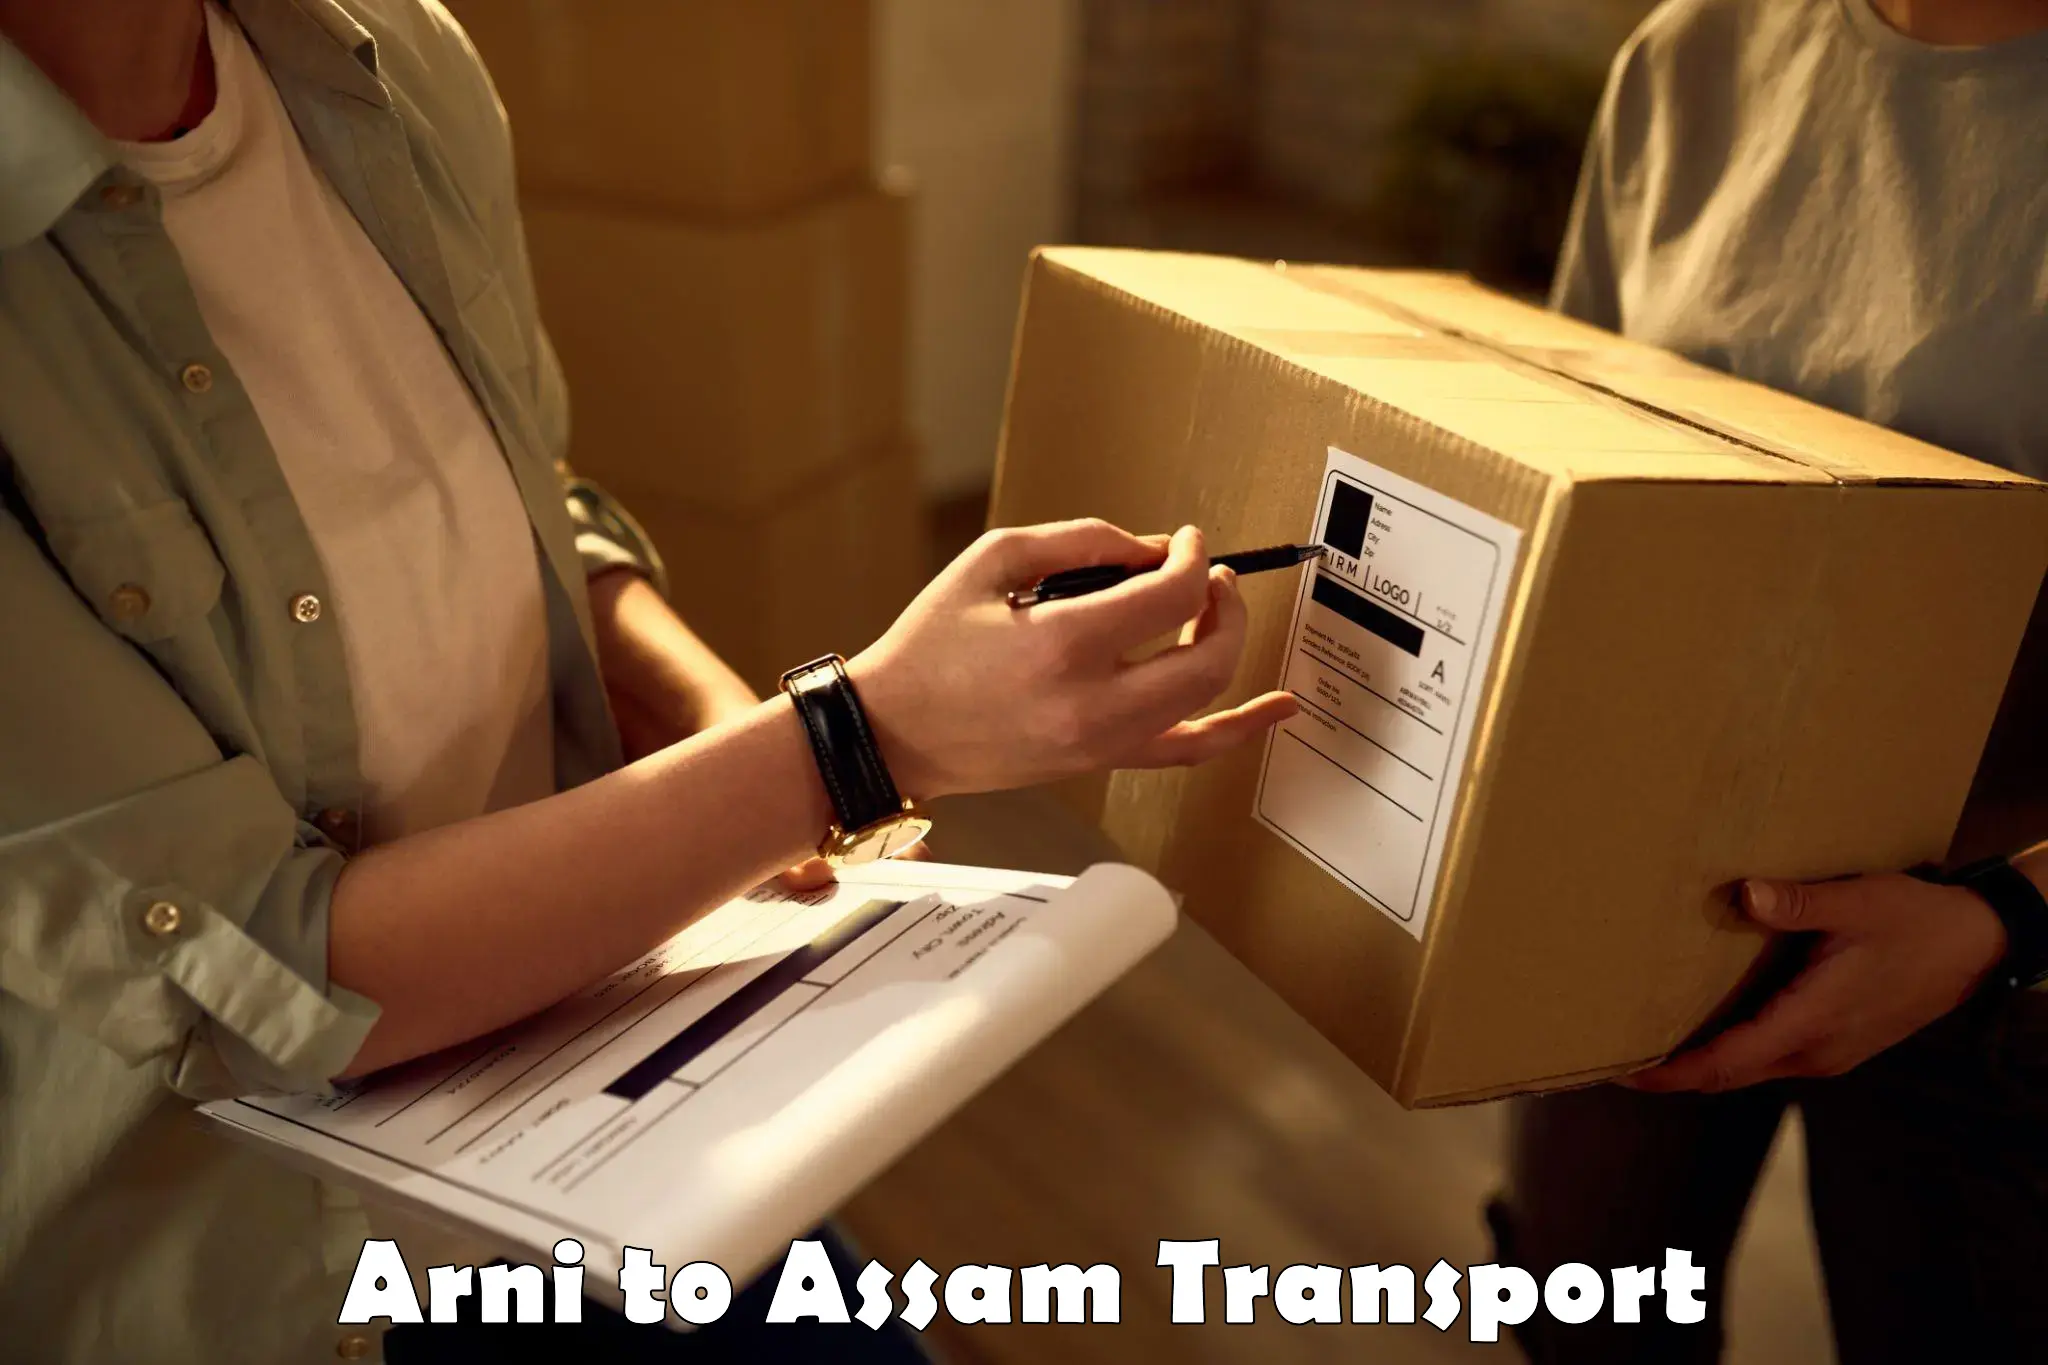 Shipping partner Arni to Kamrup